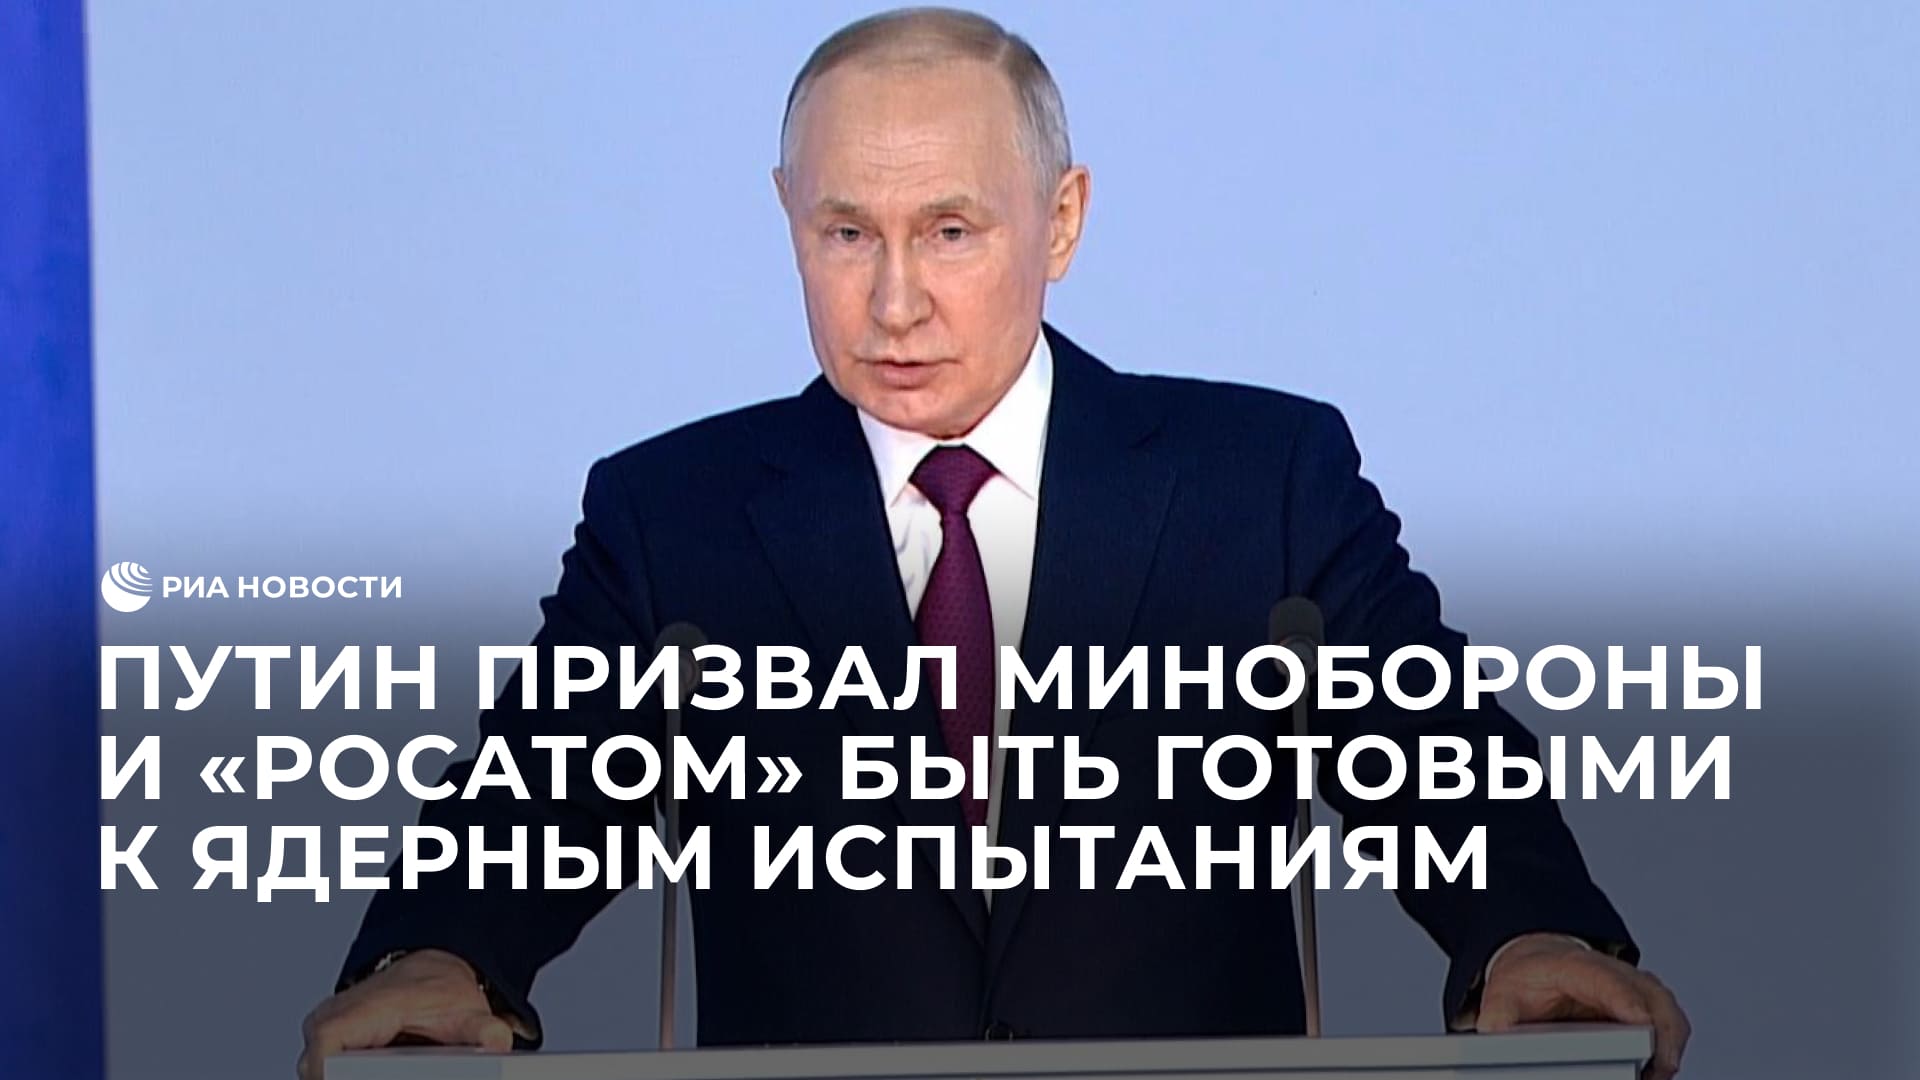 Минобороны и "Росатом" должны быть готовы к испытанию ядерного оружия, заявил Путин